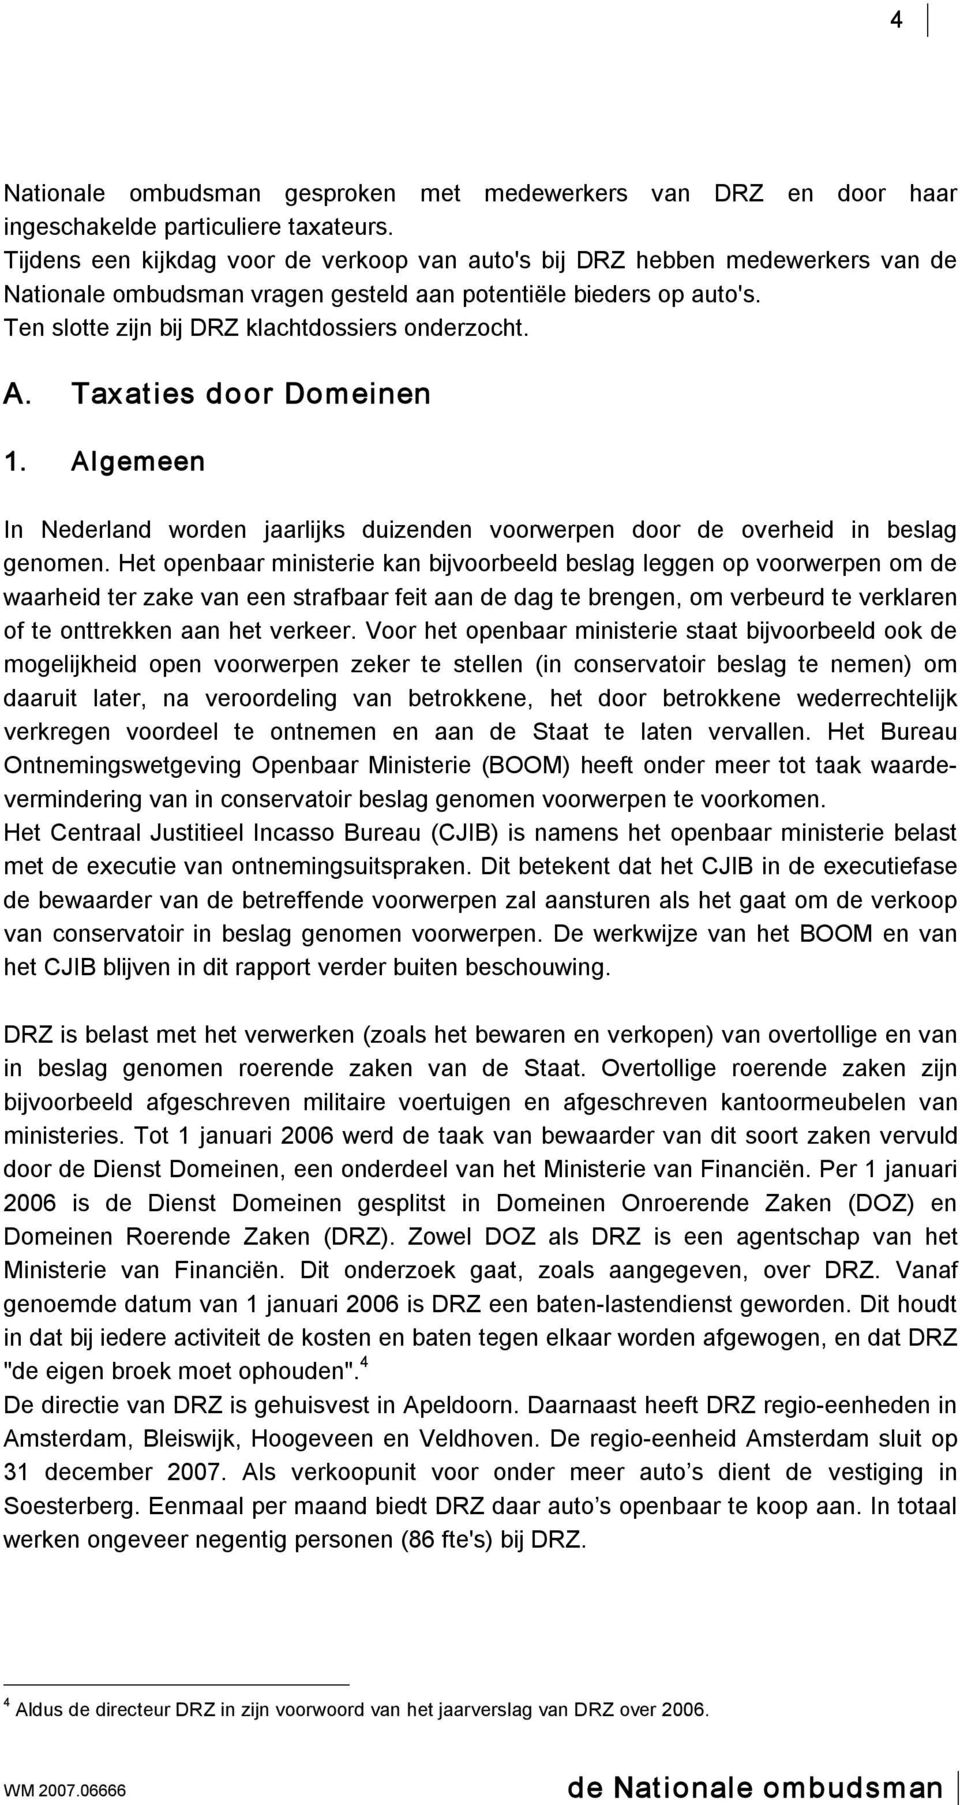 A. Taxaties door Domeinen 1. Algemeen In Nederland worden jaarlijks duizenden voorwerpen door de overheid in beslag genomen.